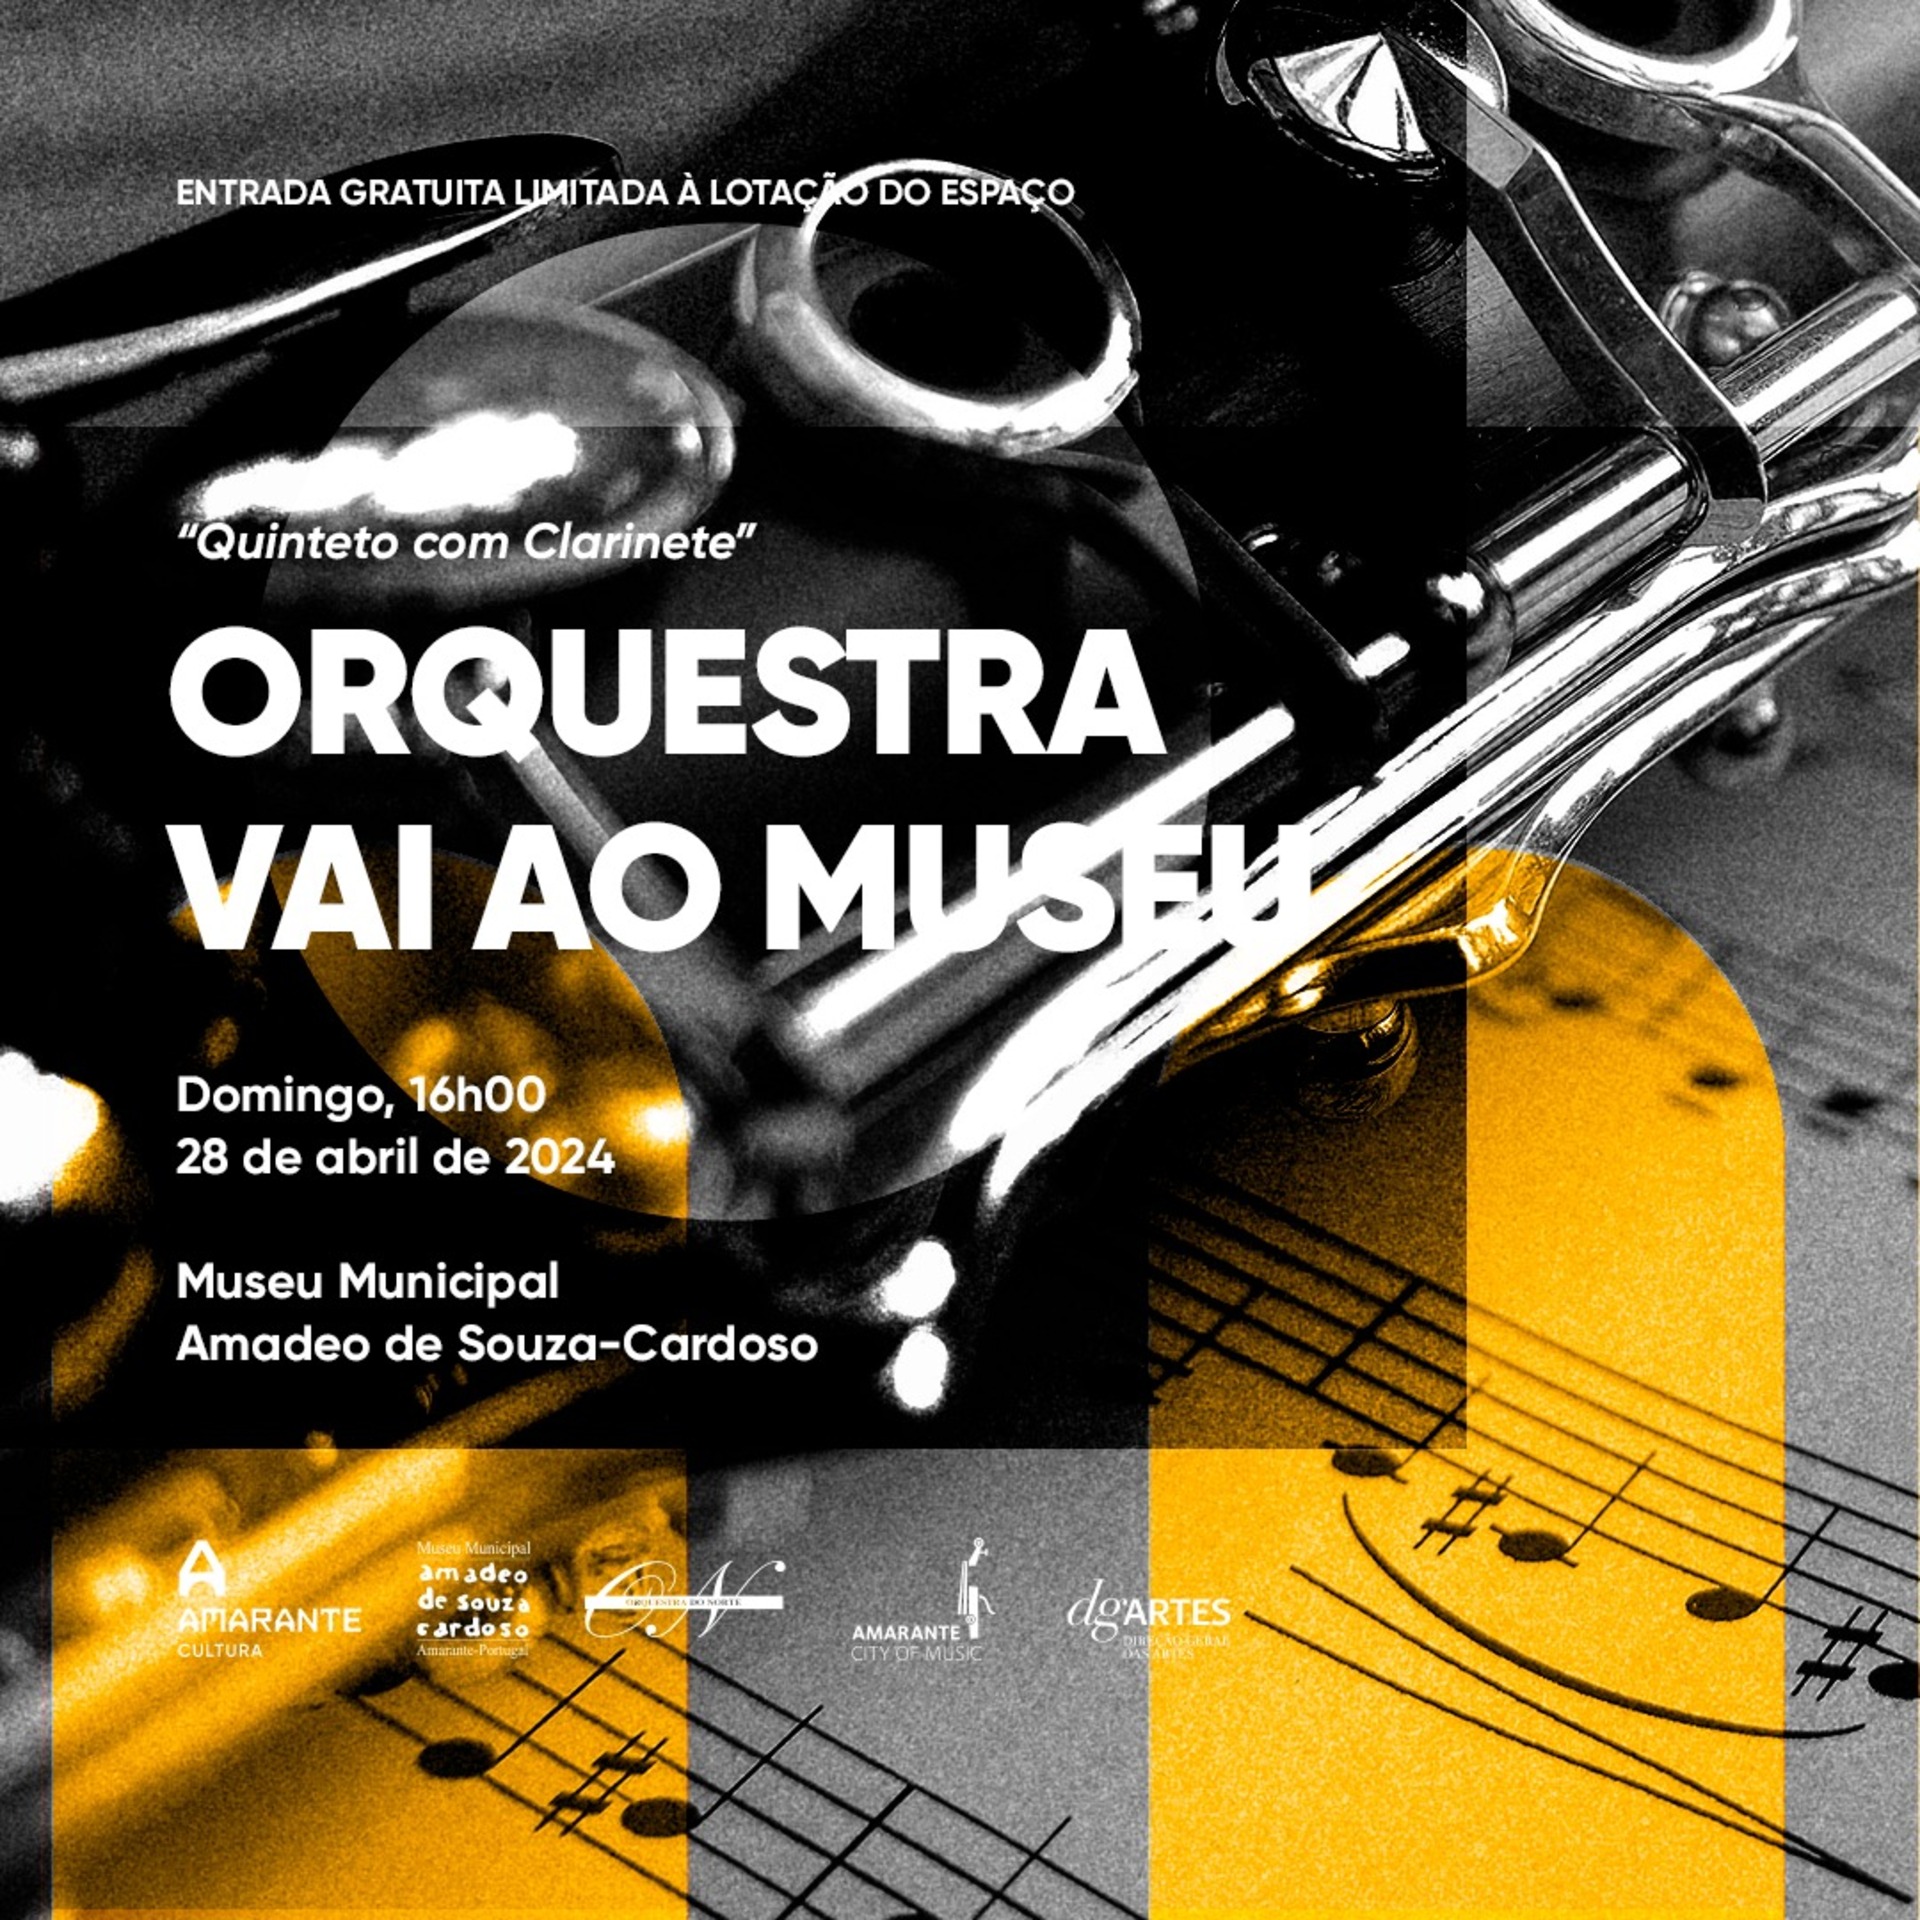 Museu Municipal Amadeo de Souza-Cardoso recebe mais um concerto do ciclo “Orquestra vai ao Museu”